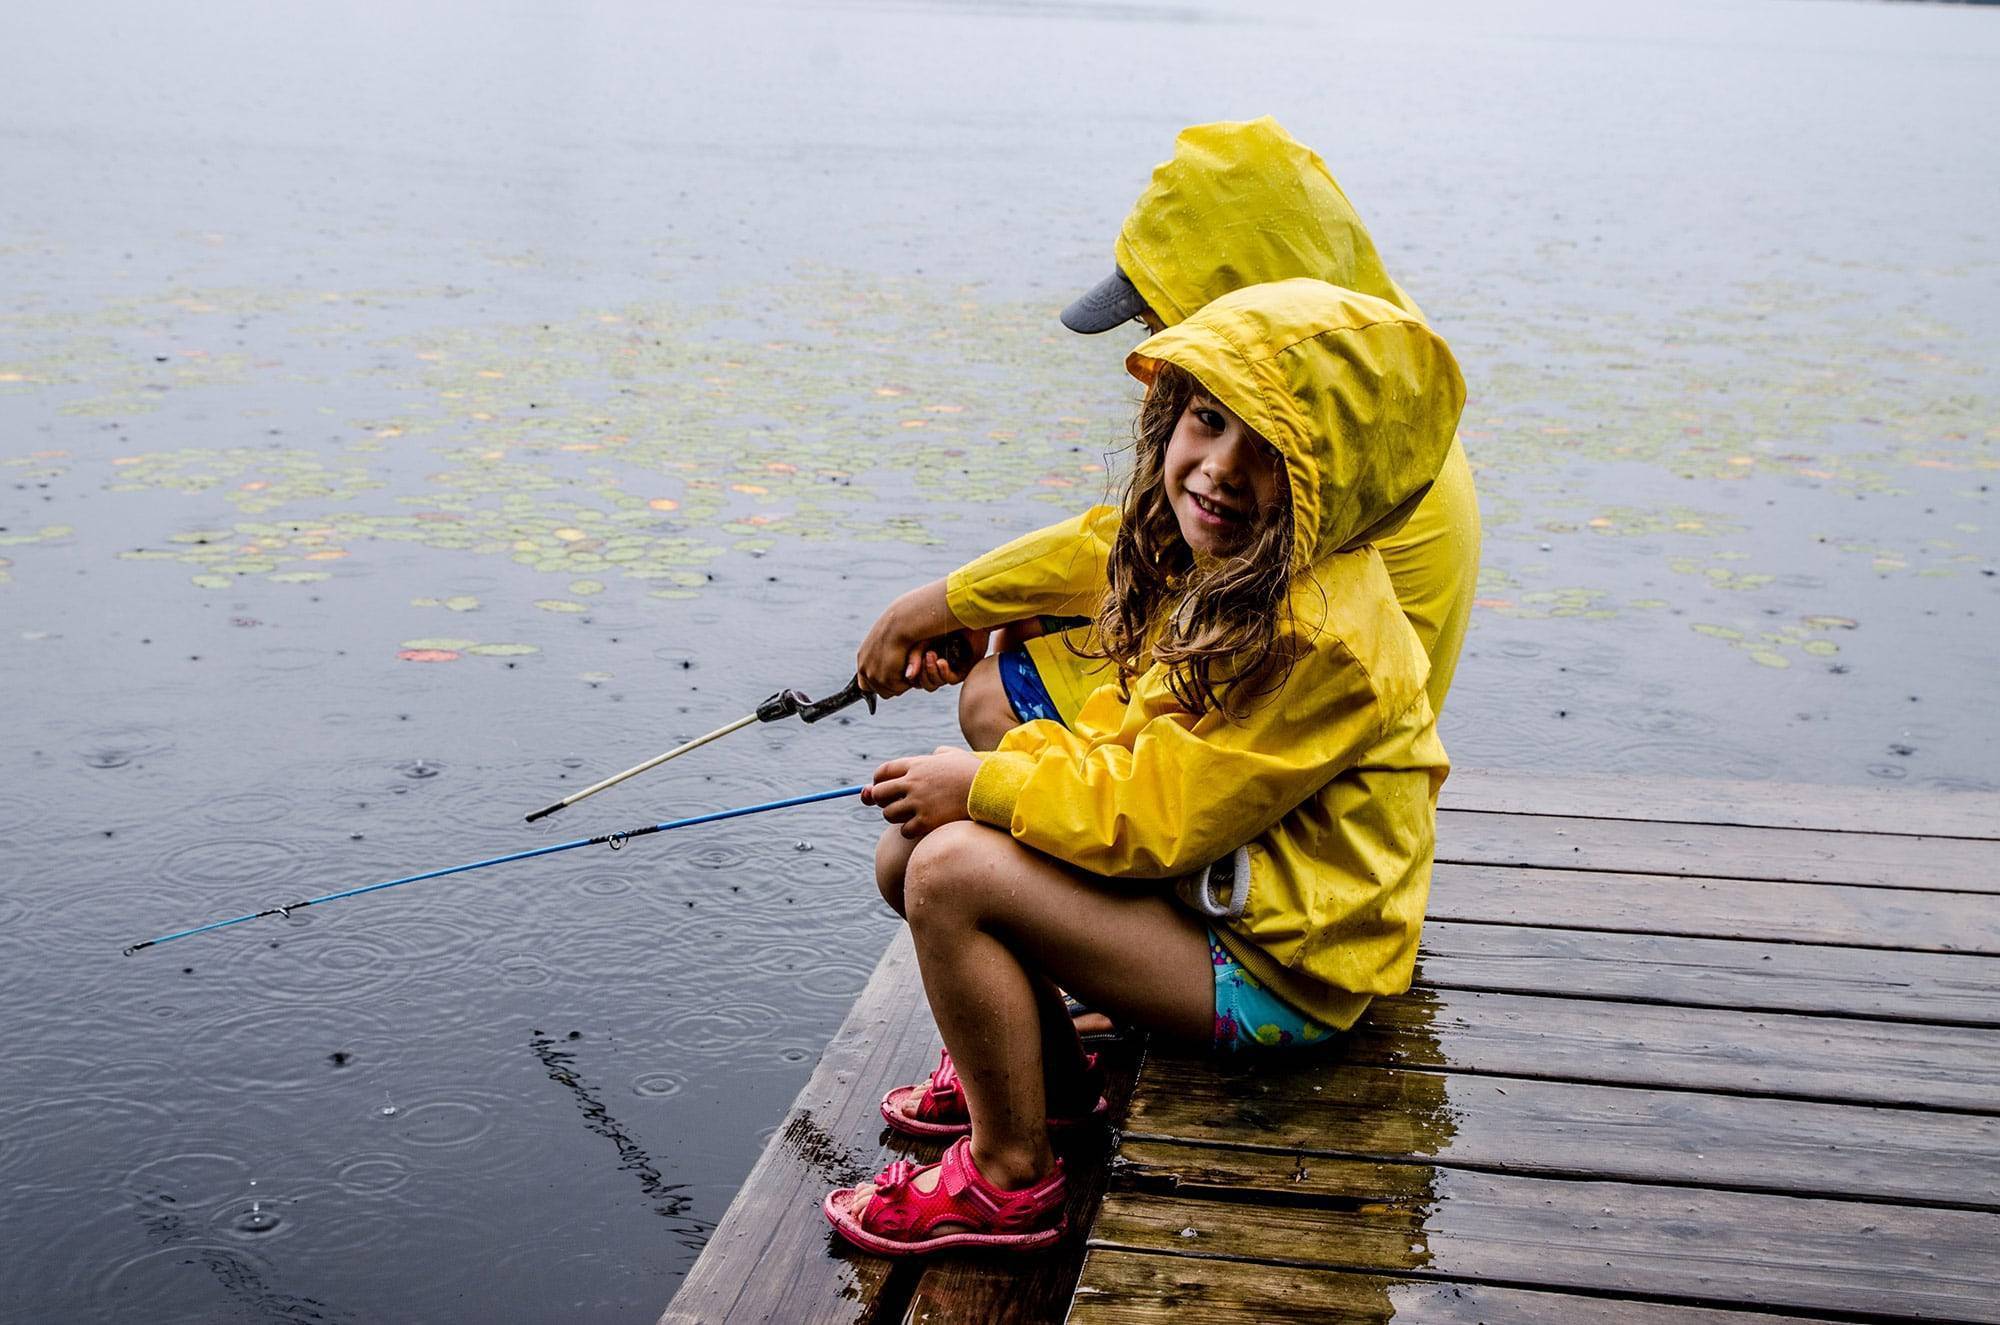 Клюет ли рыба в дождь: особенности рыбалки после дождя летом, качество клева